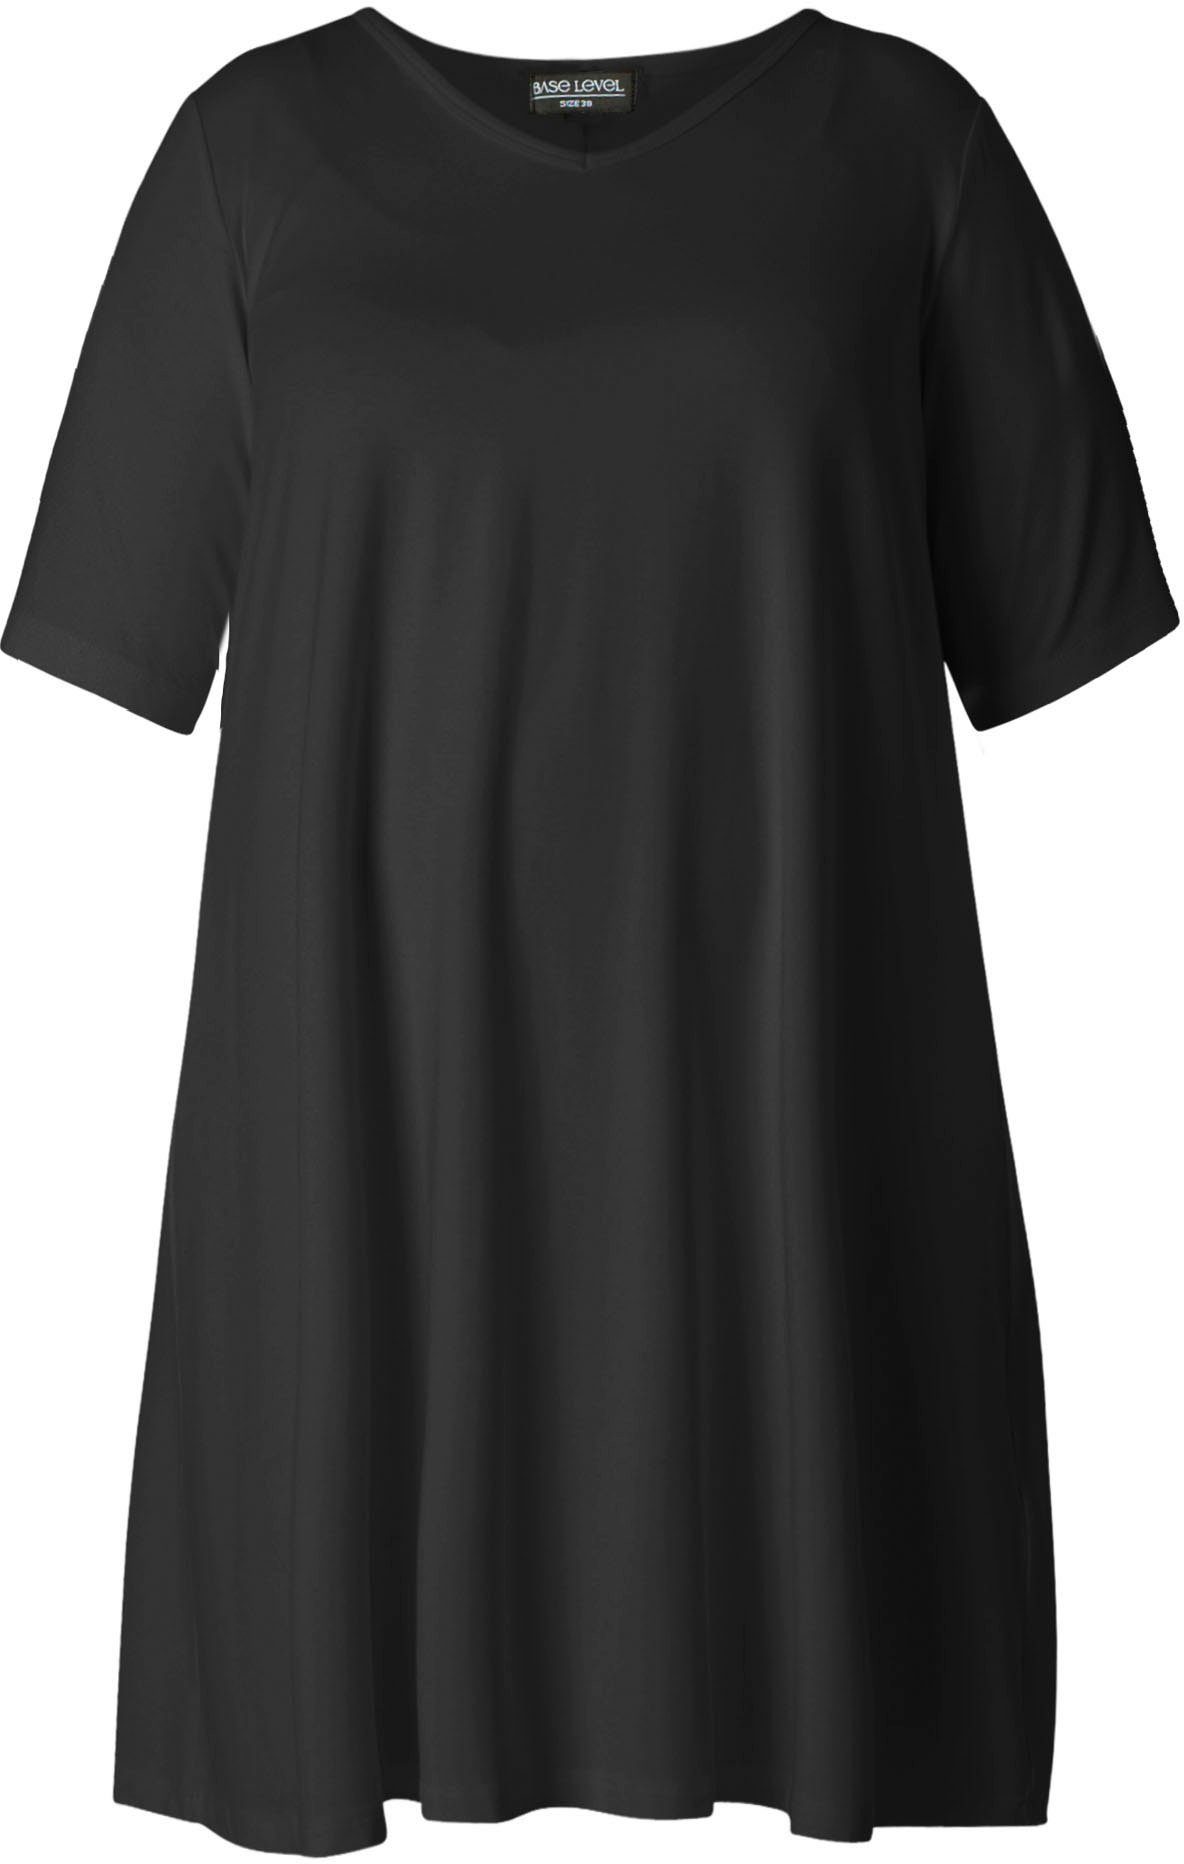 Base Level Curvy Shirtkleid black In ausgestellter Form leicht Abernathy